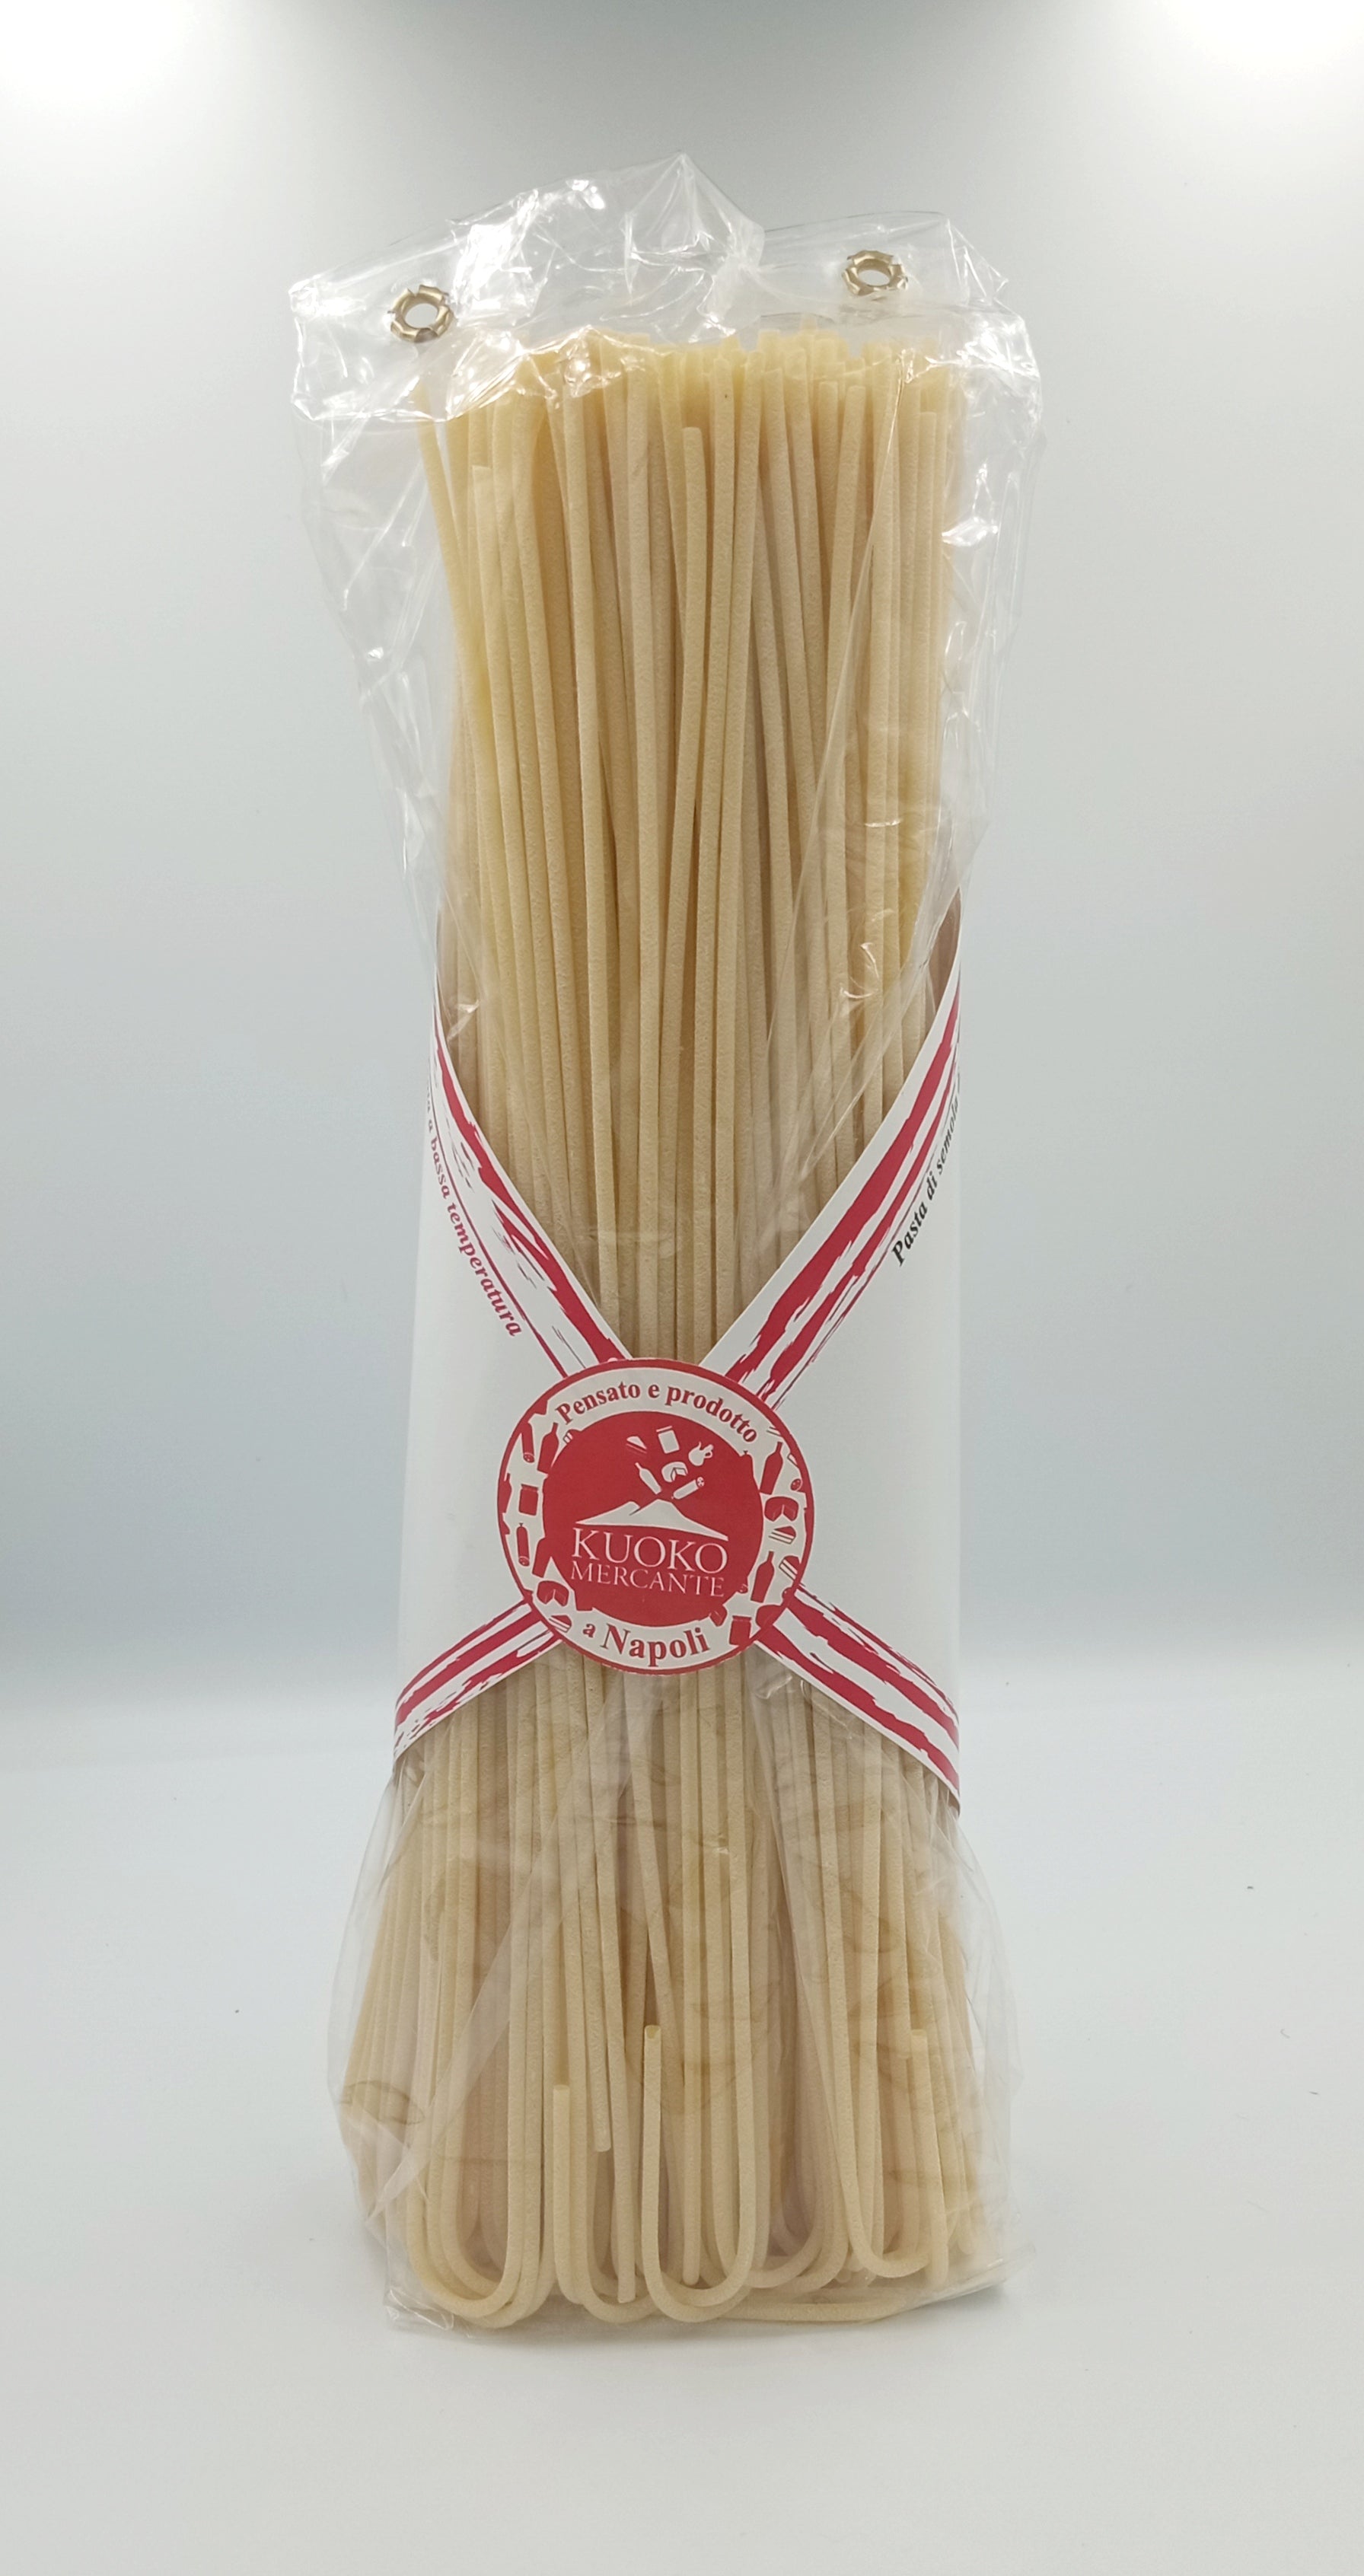 Spaghetto ad archetto 500g. - Drugstore Napoli